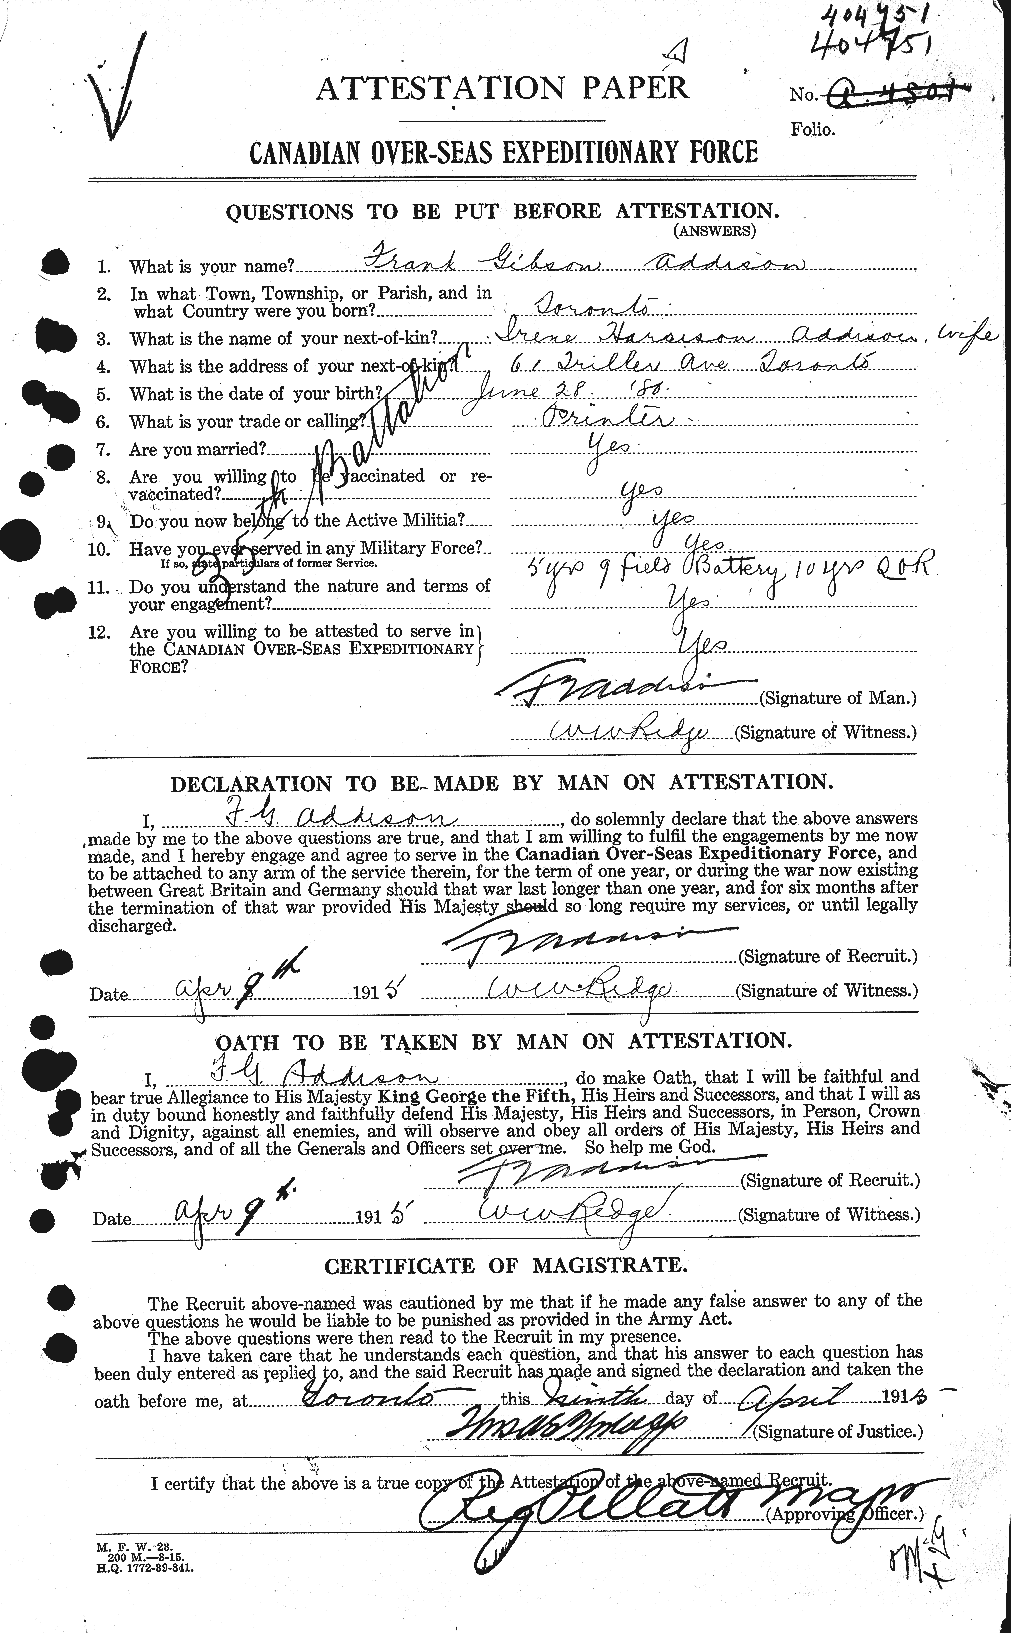 Dossiers du Personnel de la Première Guerre mondiale - CEC 202488a